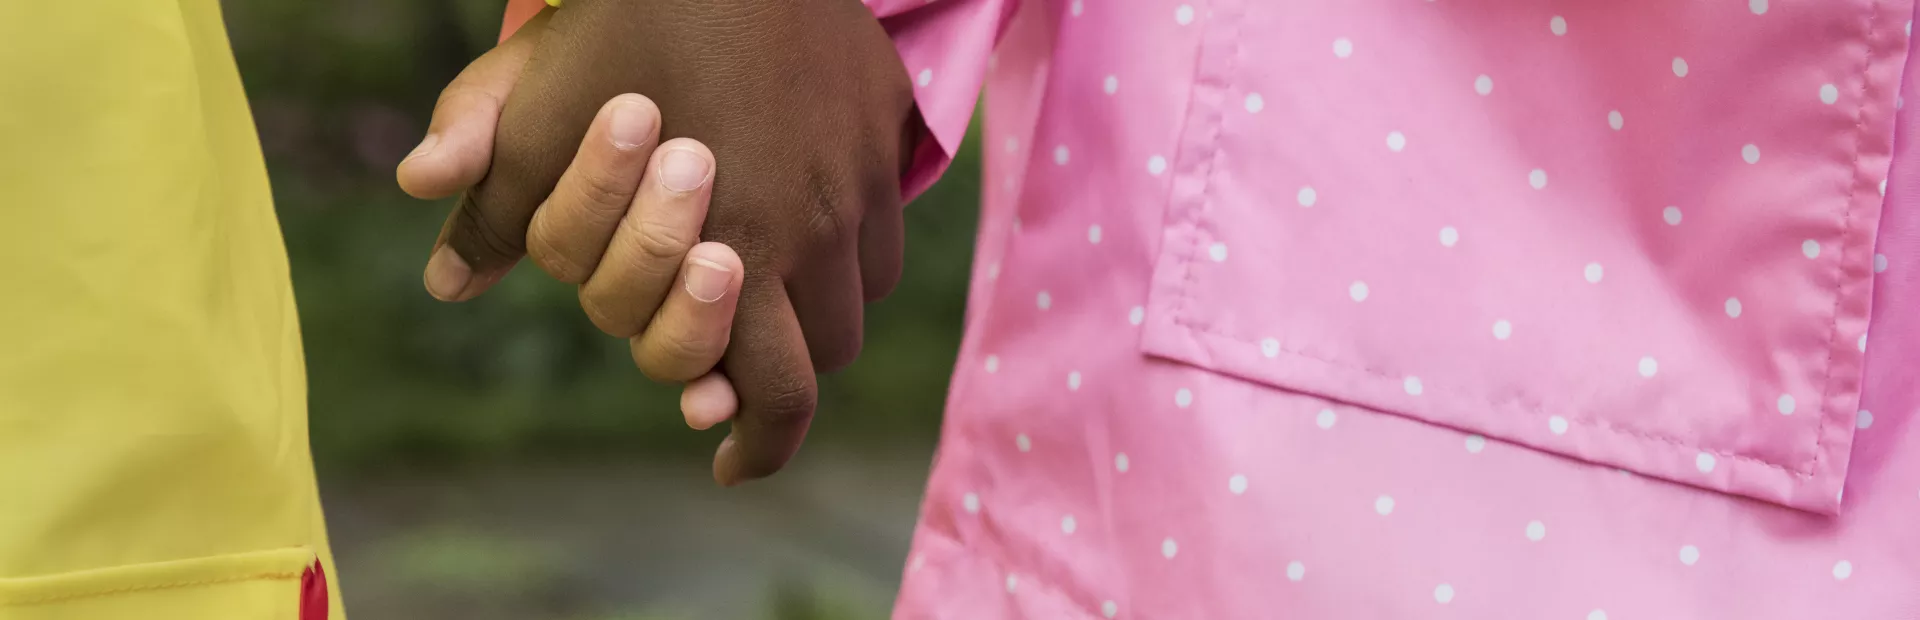 Niños sujetándose la mano